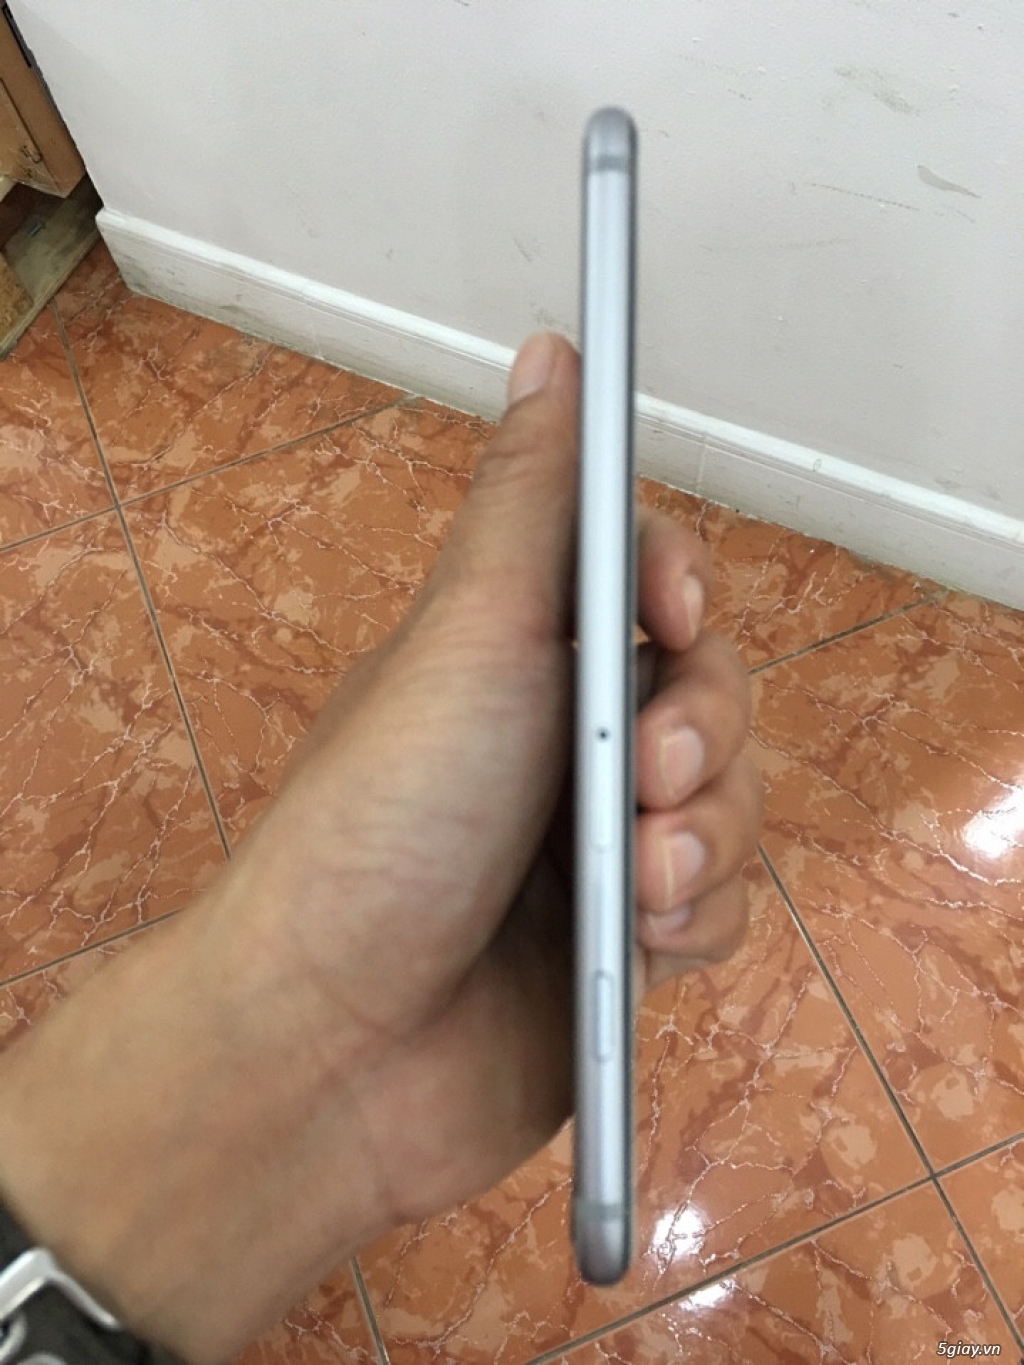 iPhone 6 Plus mày Gray 64GB xách tay từ Mỹ giá Shock - 4